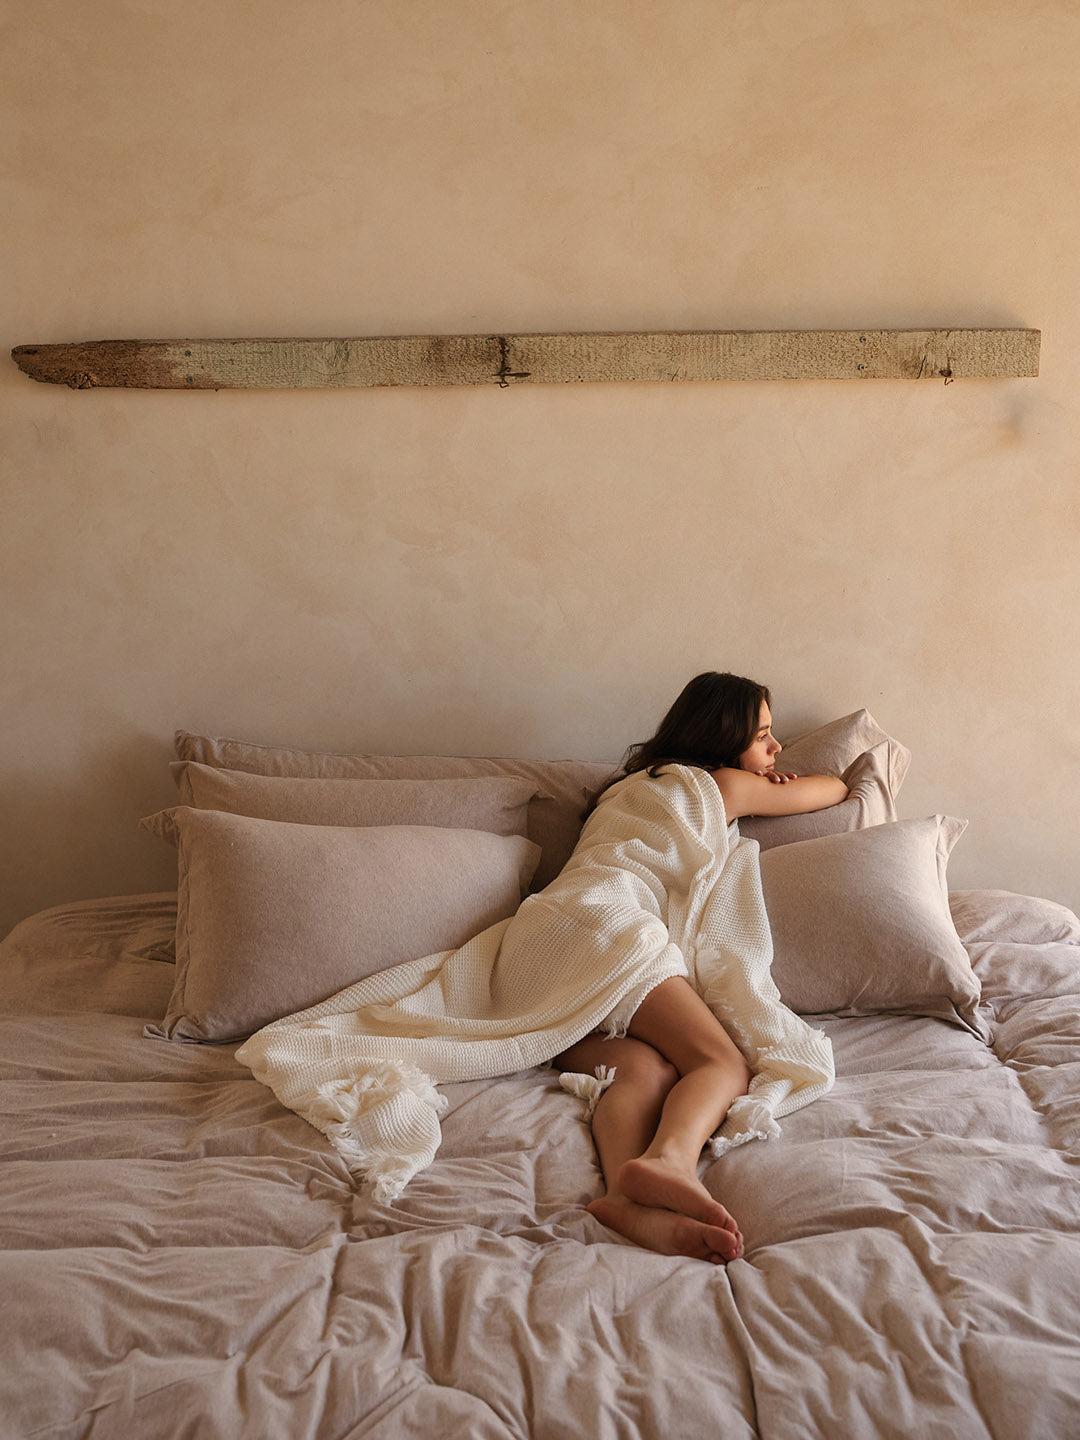 אישה מכוסה בשמיכה נשענת על סט כריות על מיטה עם סט מצעים איכותיים